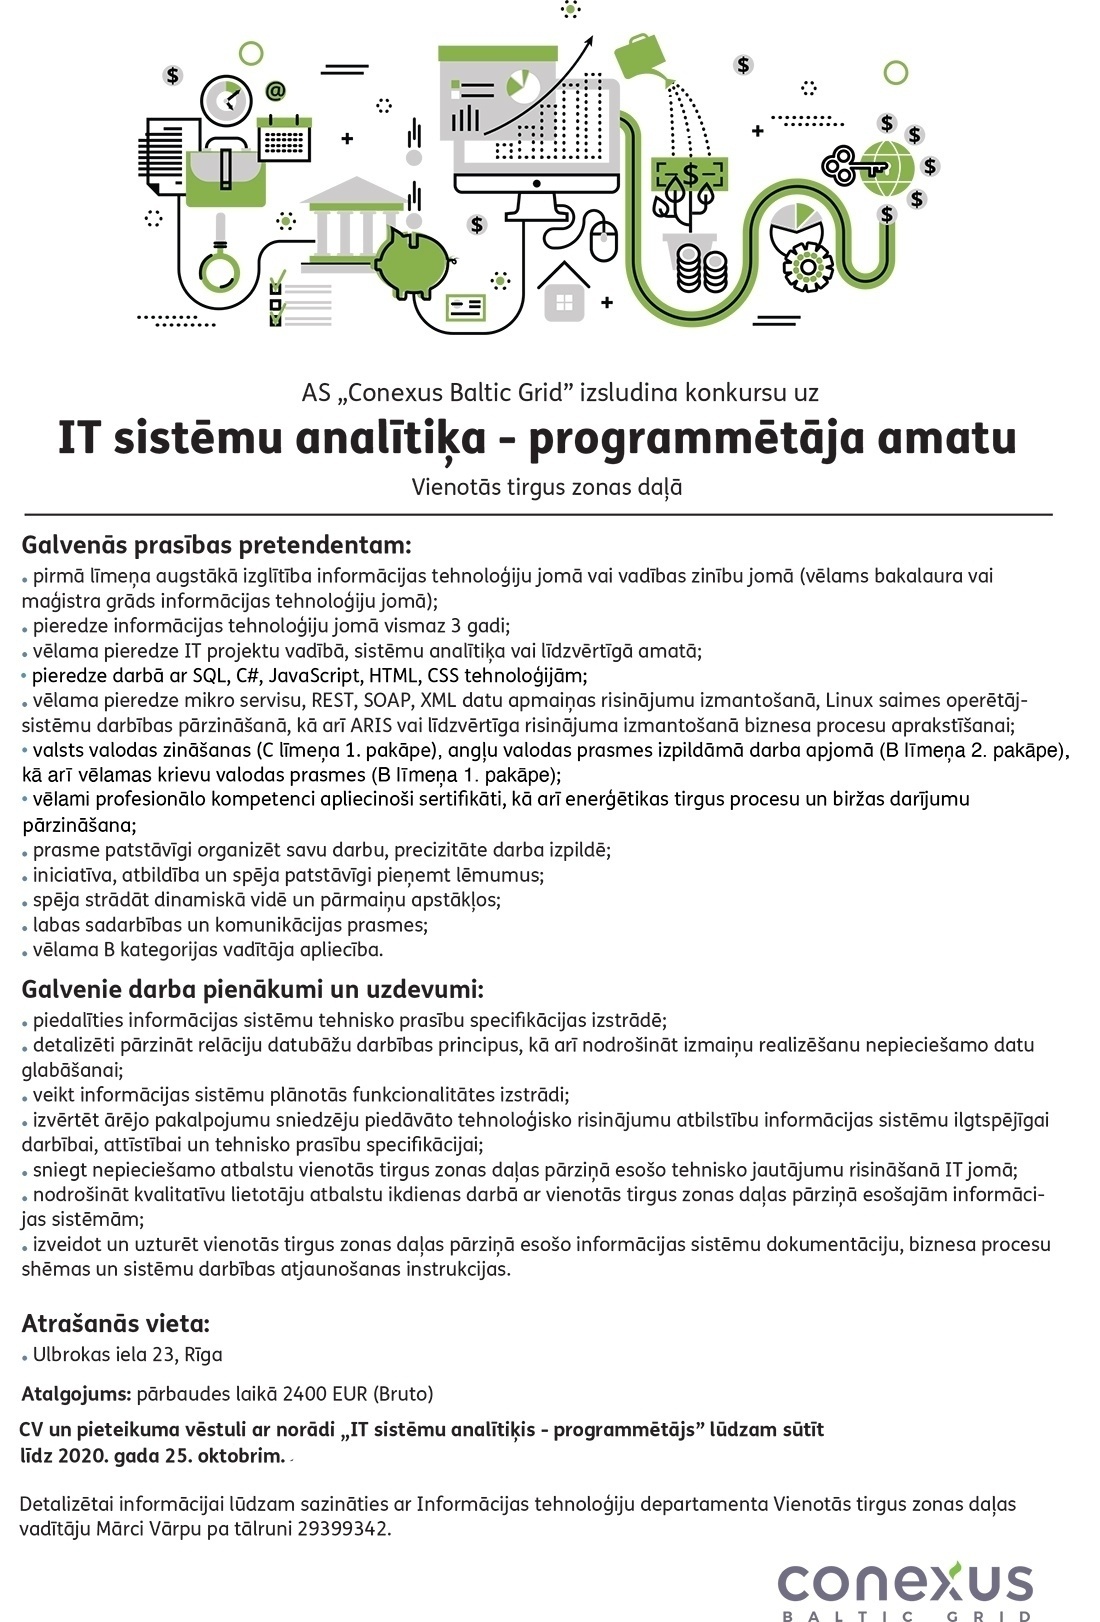 Conexus Baltic Grid, A/S IT sistēmu analītiķis/e - programmētājs/a